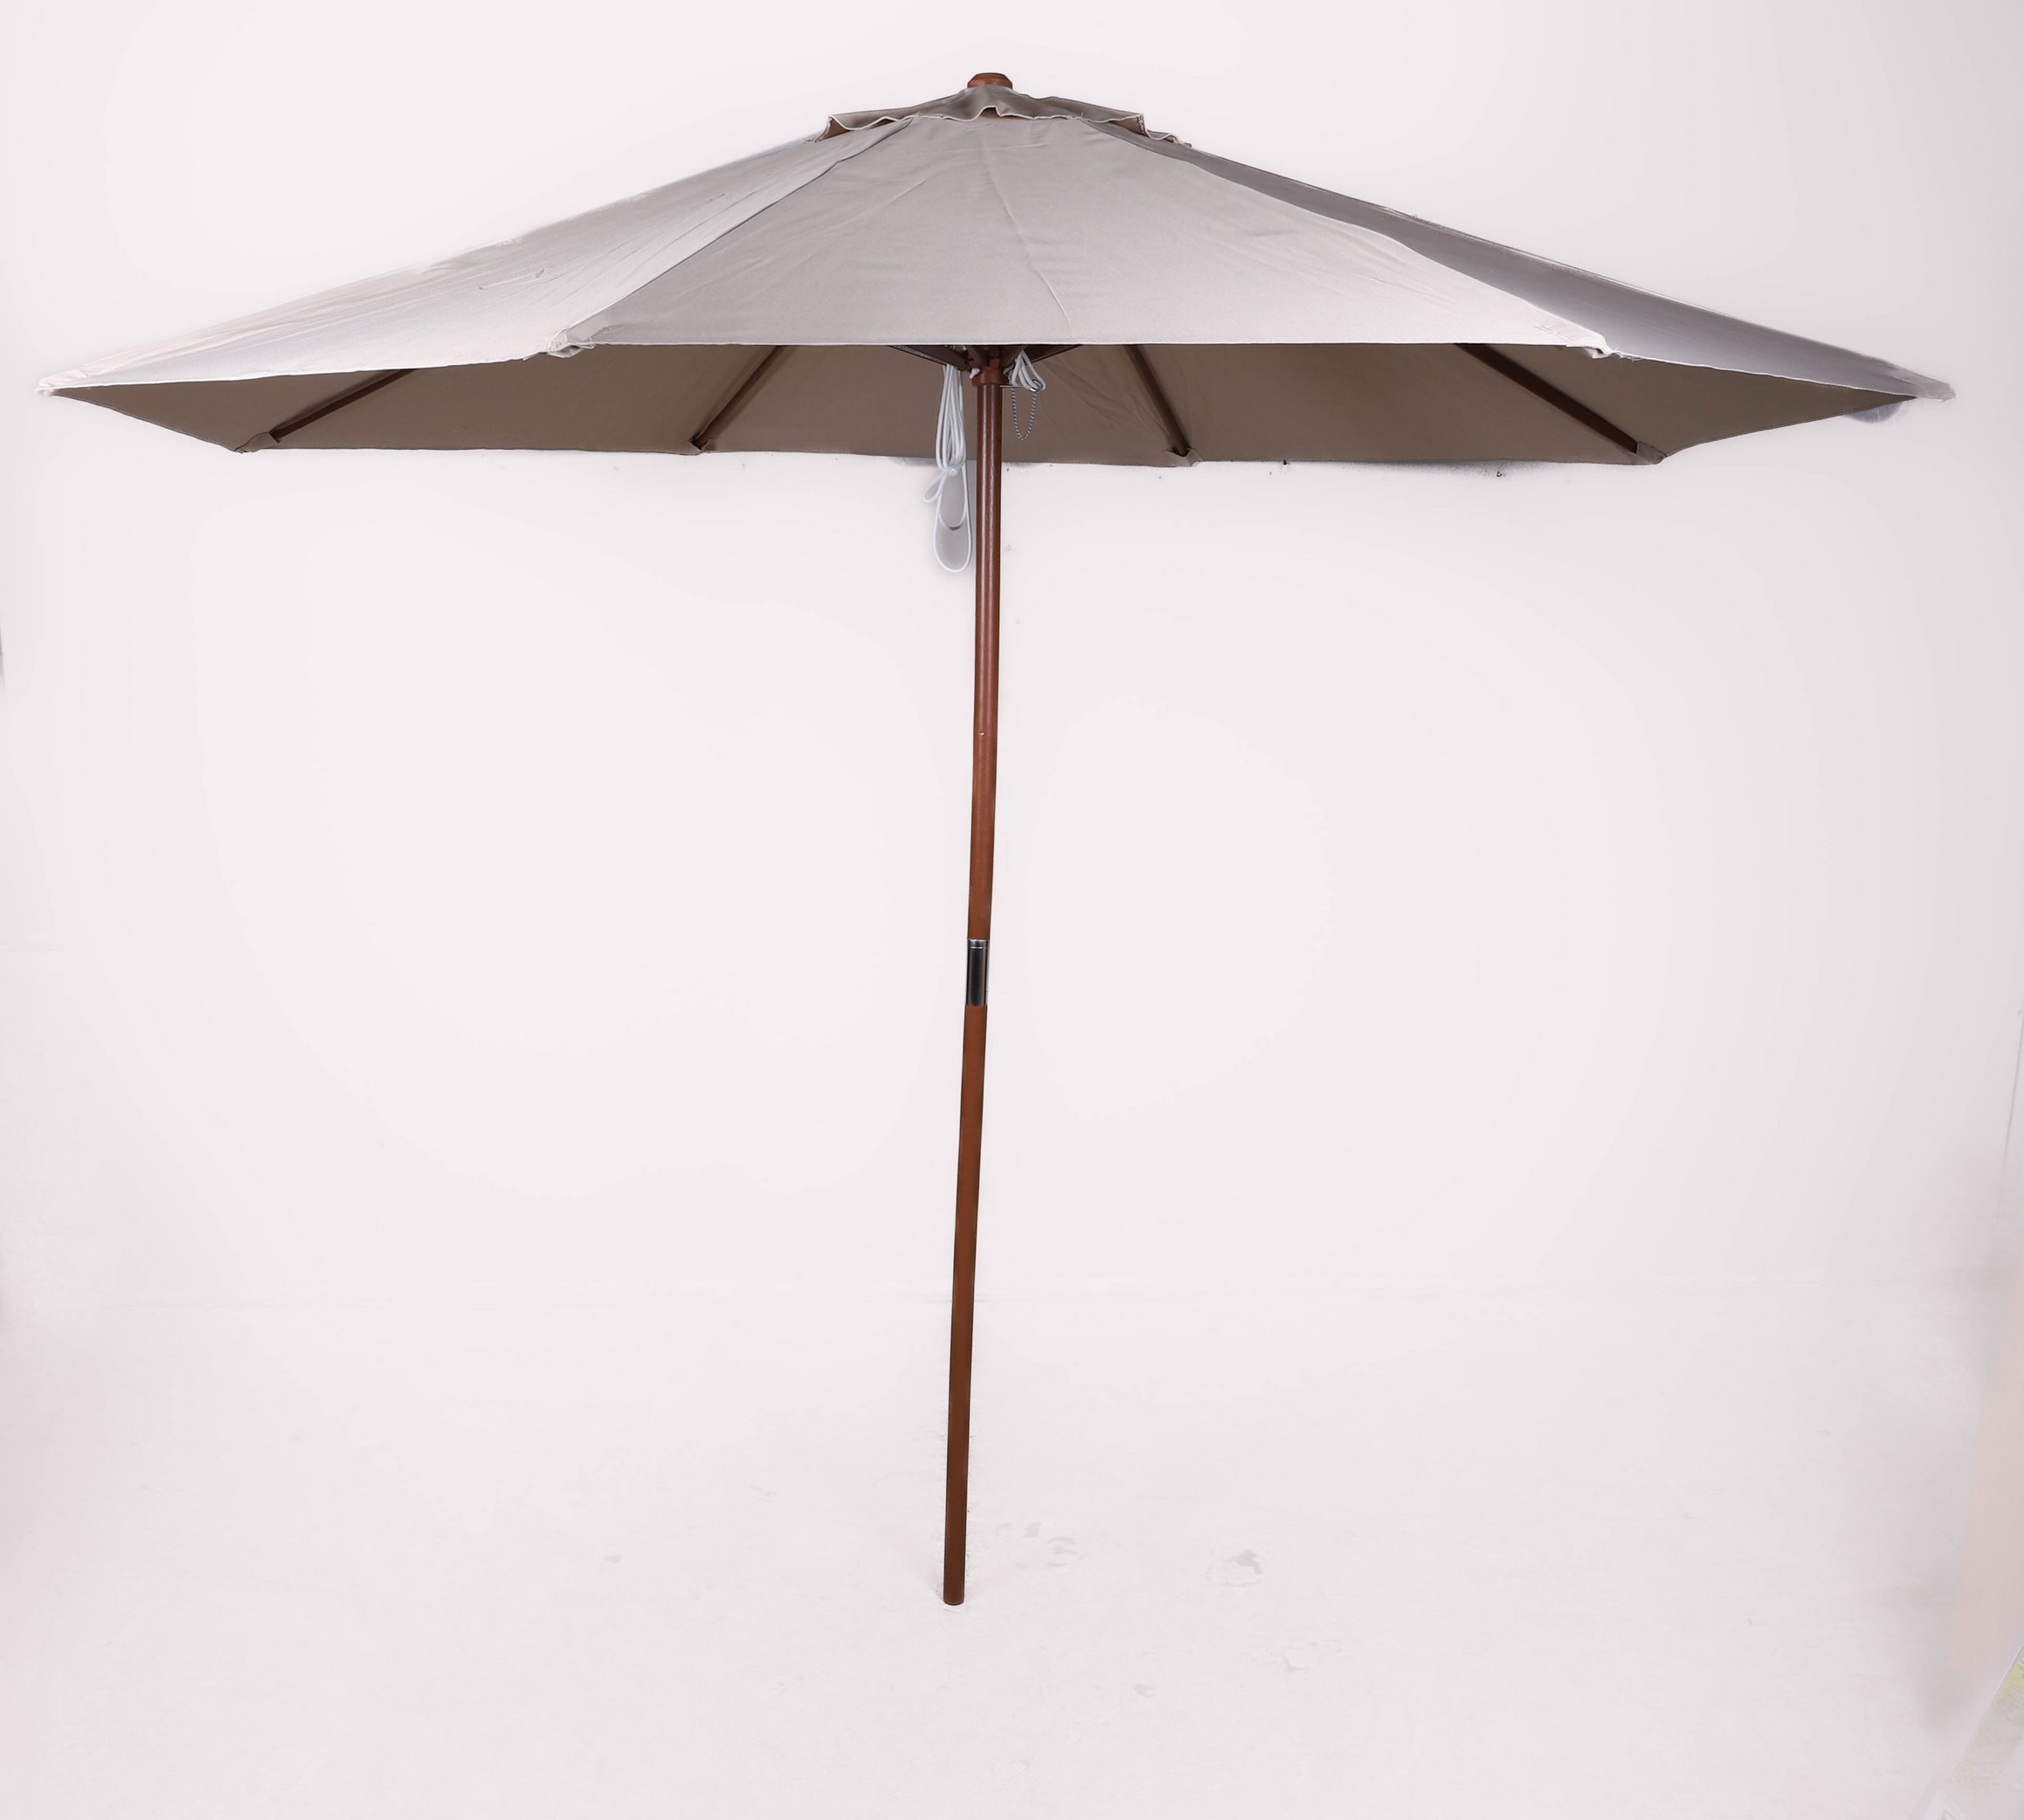 9' wood market canopy/umbrella,